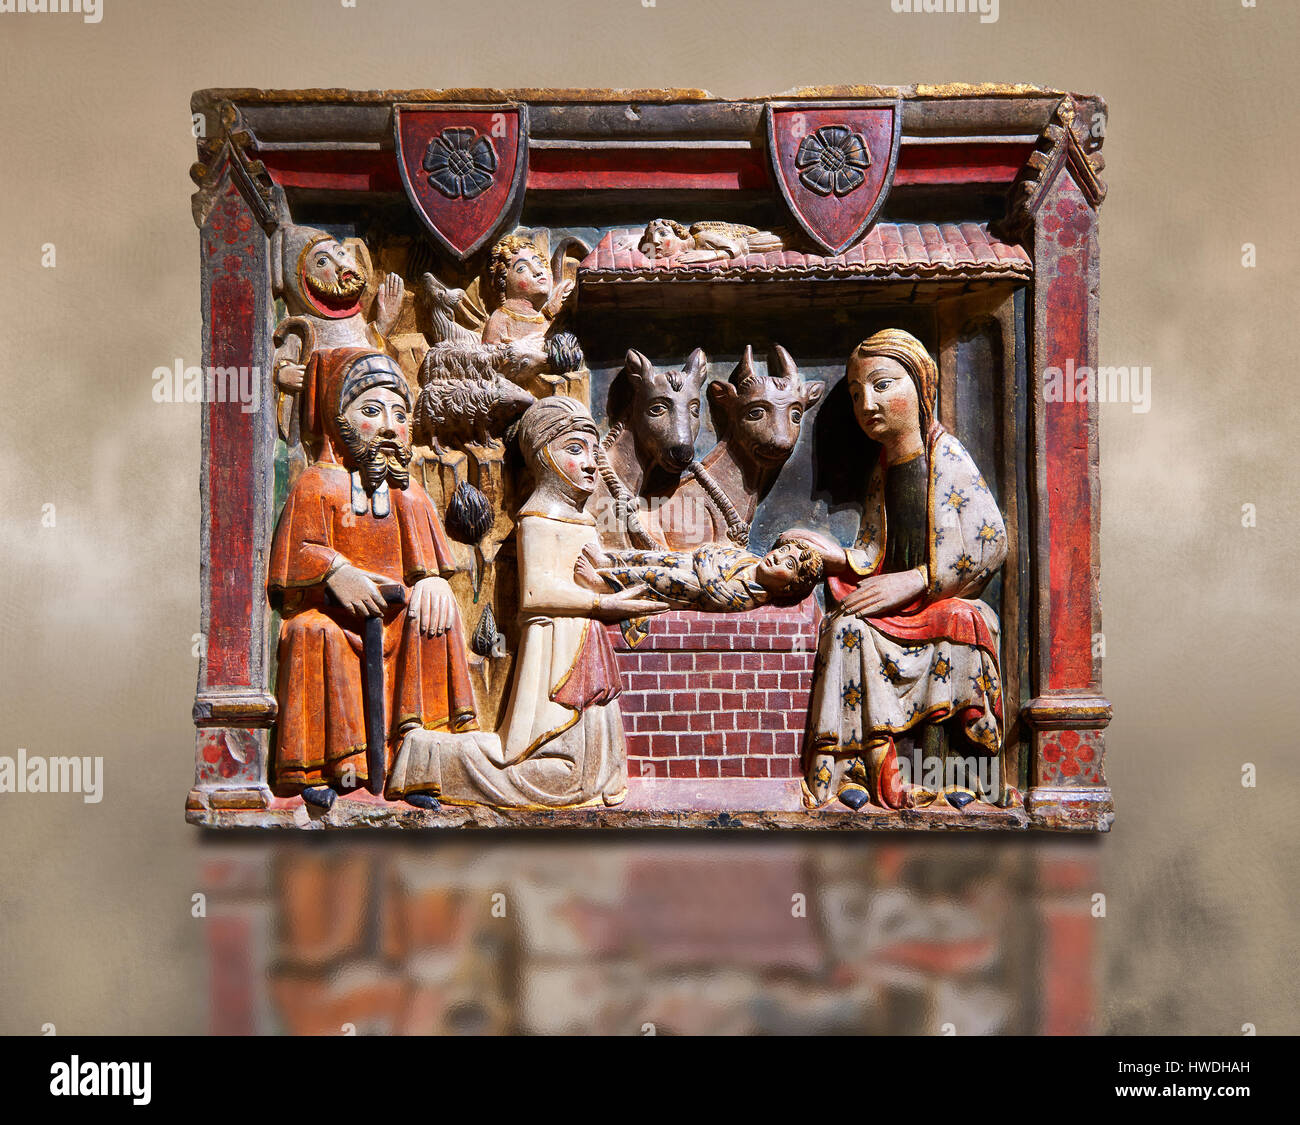 Dipinto gotico bassorilievo della Natività da master di Albesa. Museo Nazionale di Arte Catalana di Barcellona, Spagna, inv n.: 017342-000 Foto Stock